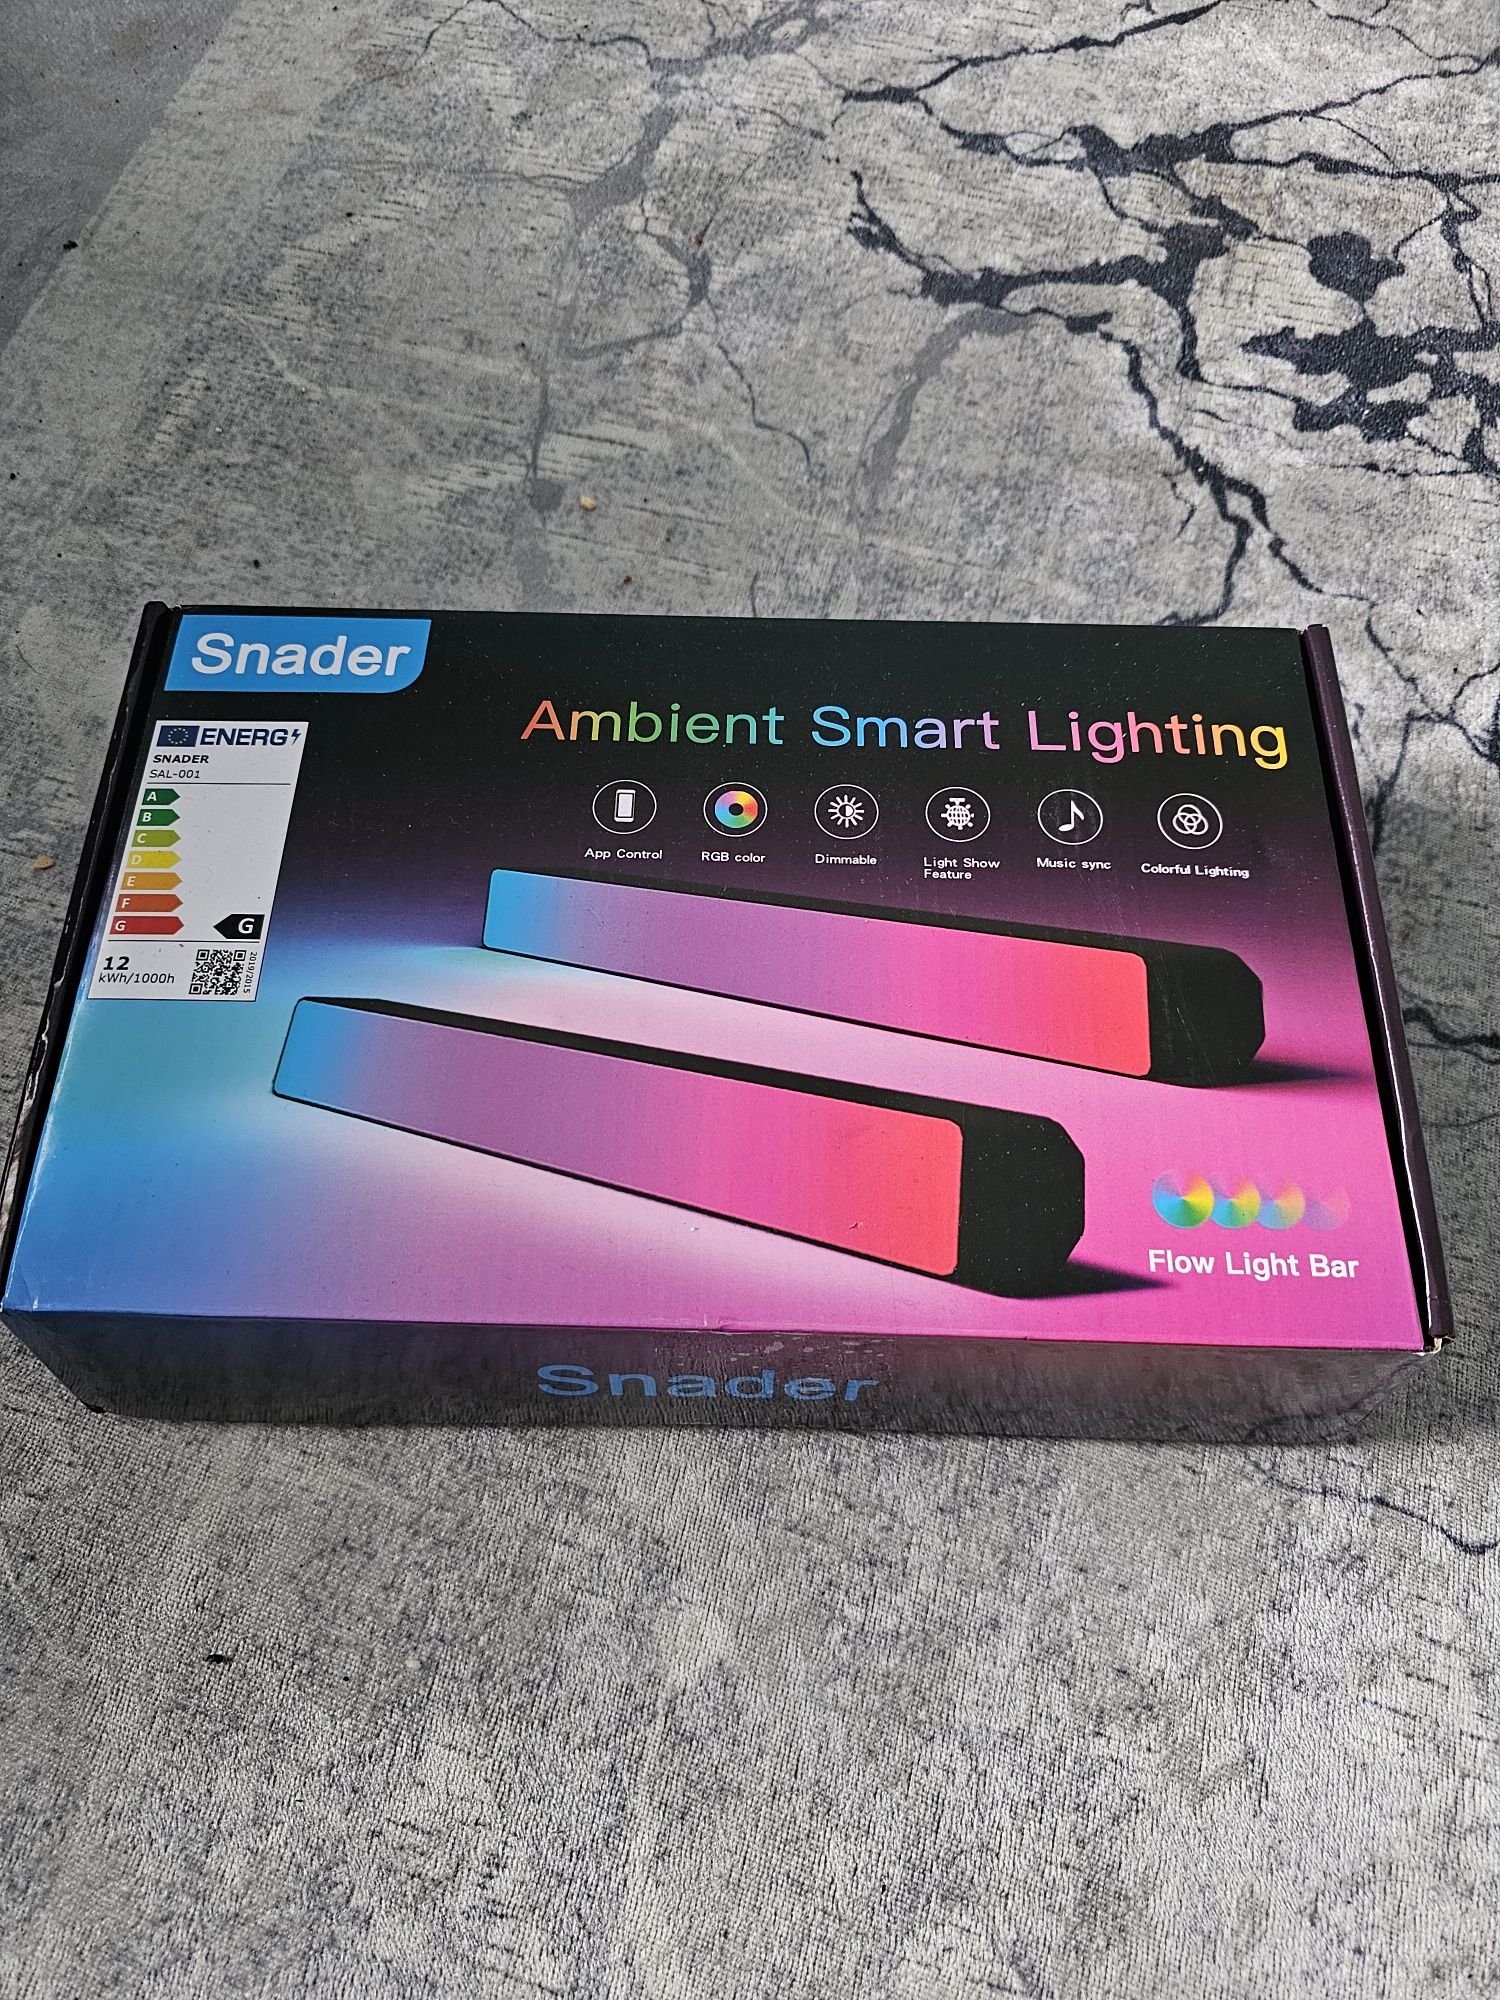 Ambient smart lighting